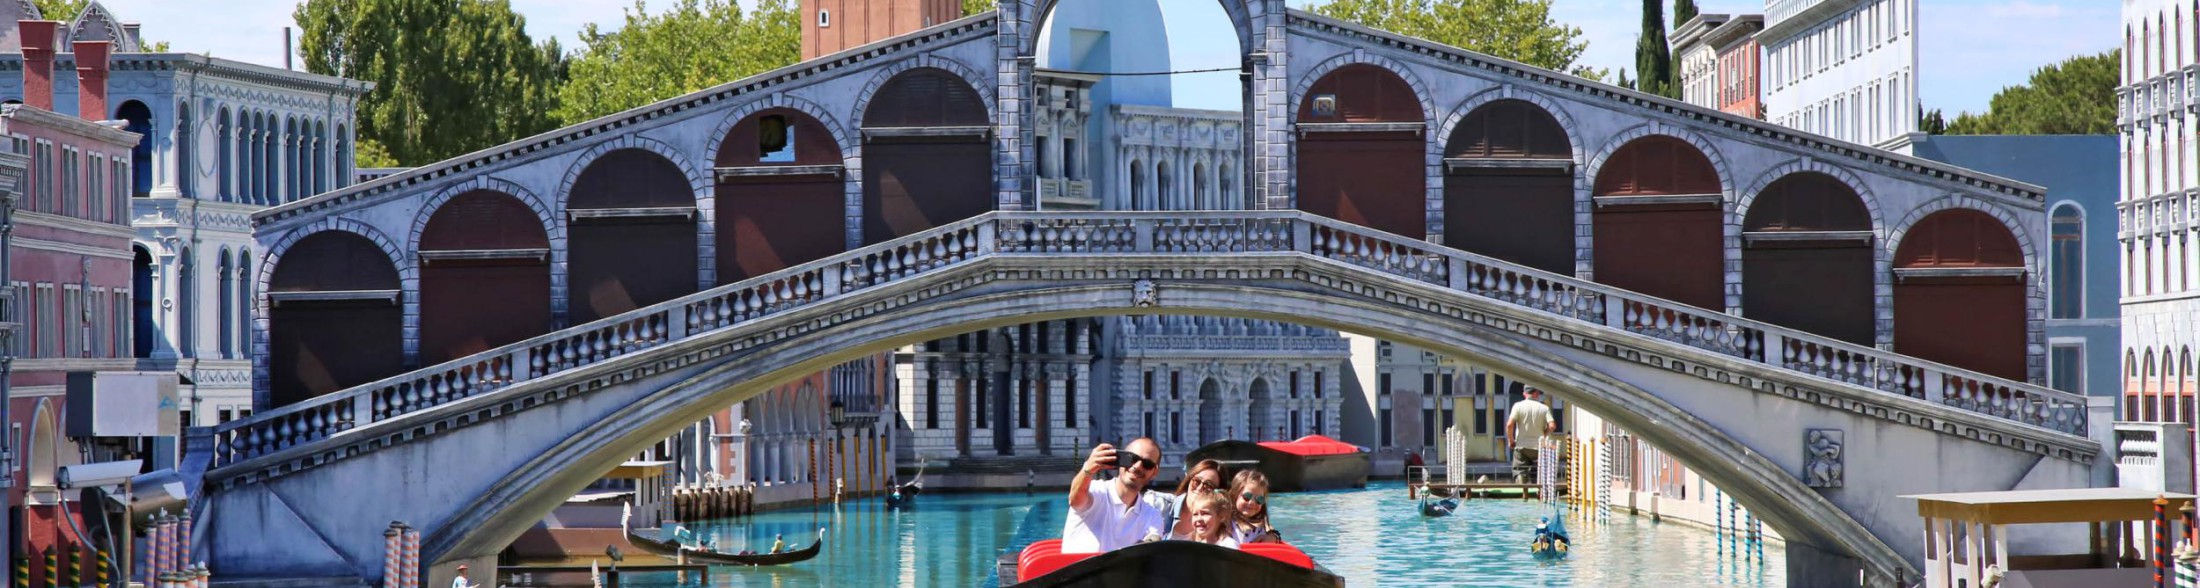 Riaprono i parchi! Italia in Miniatura dal 18 marzo, Acquario di Cattolica e Oltremare dal 1 aprile